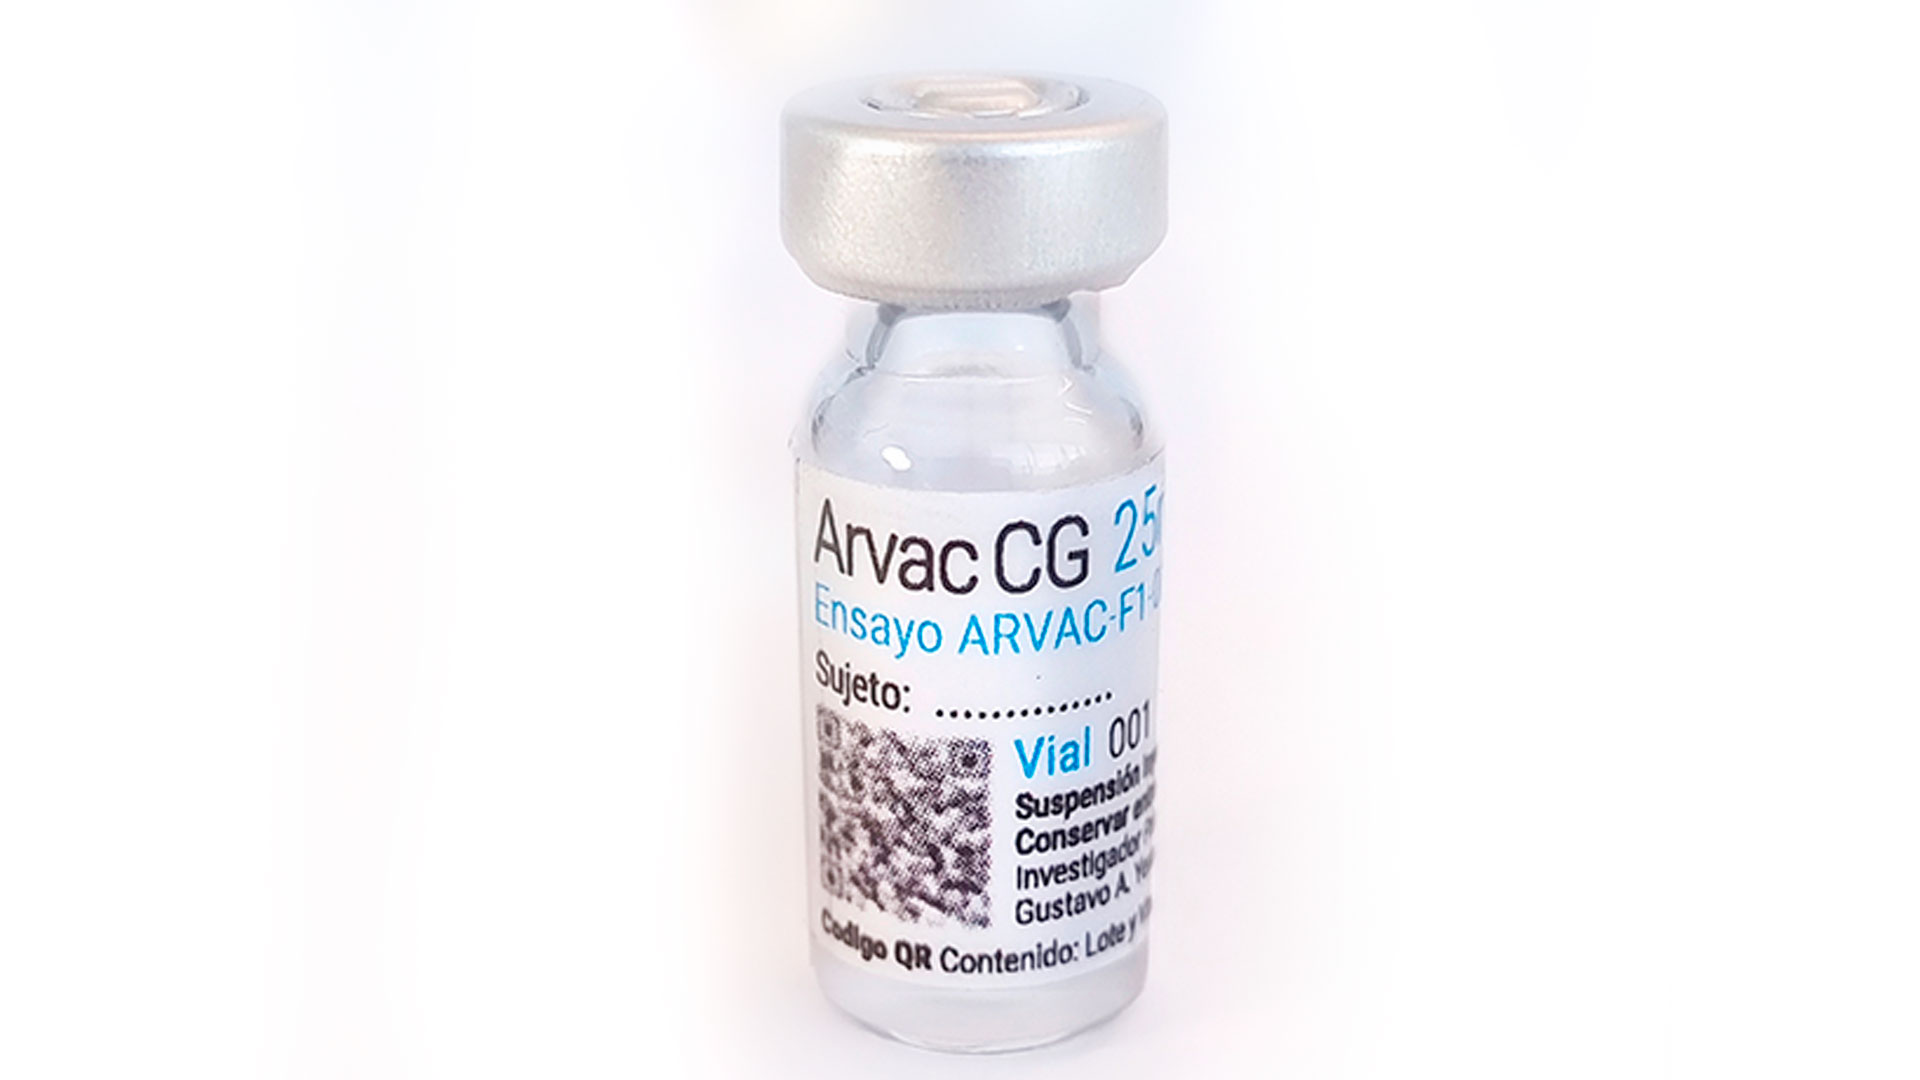 ARVAC-CG est le premier vaccin contre les maladies infectieuses entièrement conçu et développé en Argentine, achève les études cliniques de phase I et passe en phase II/III